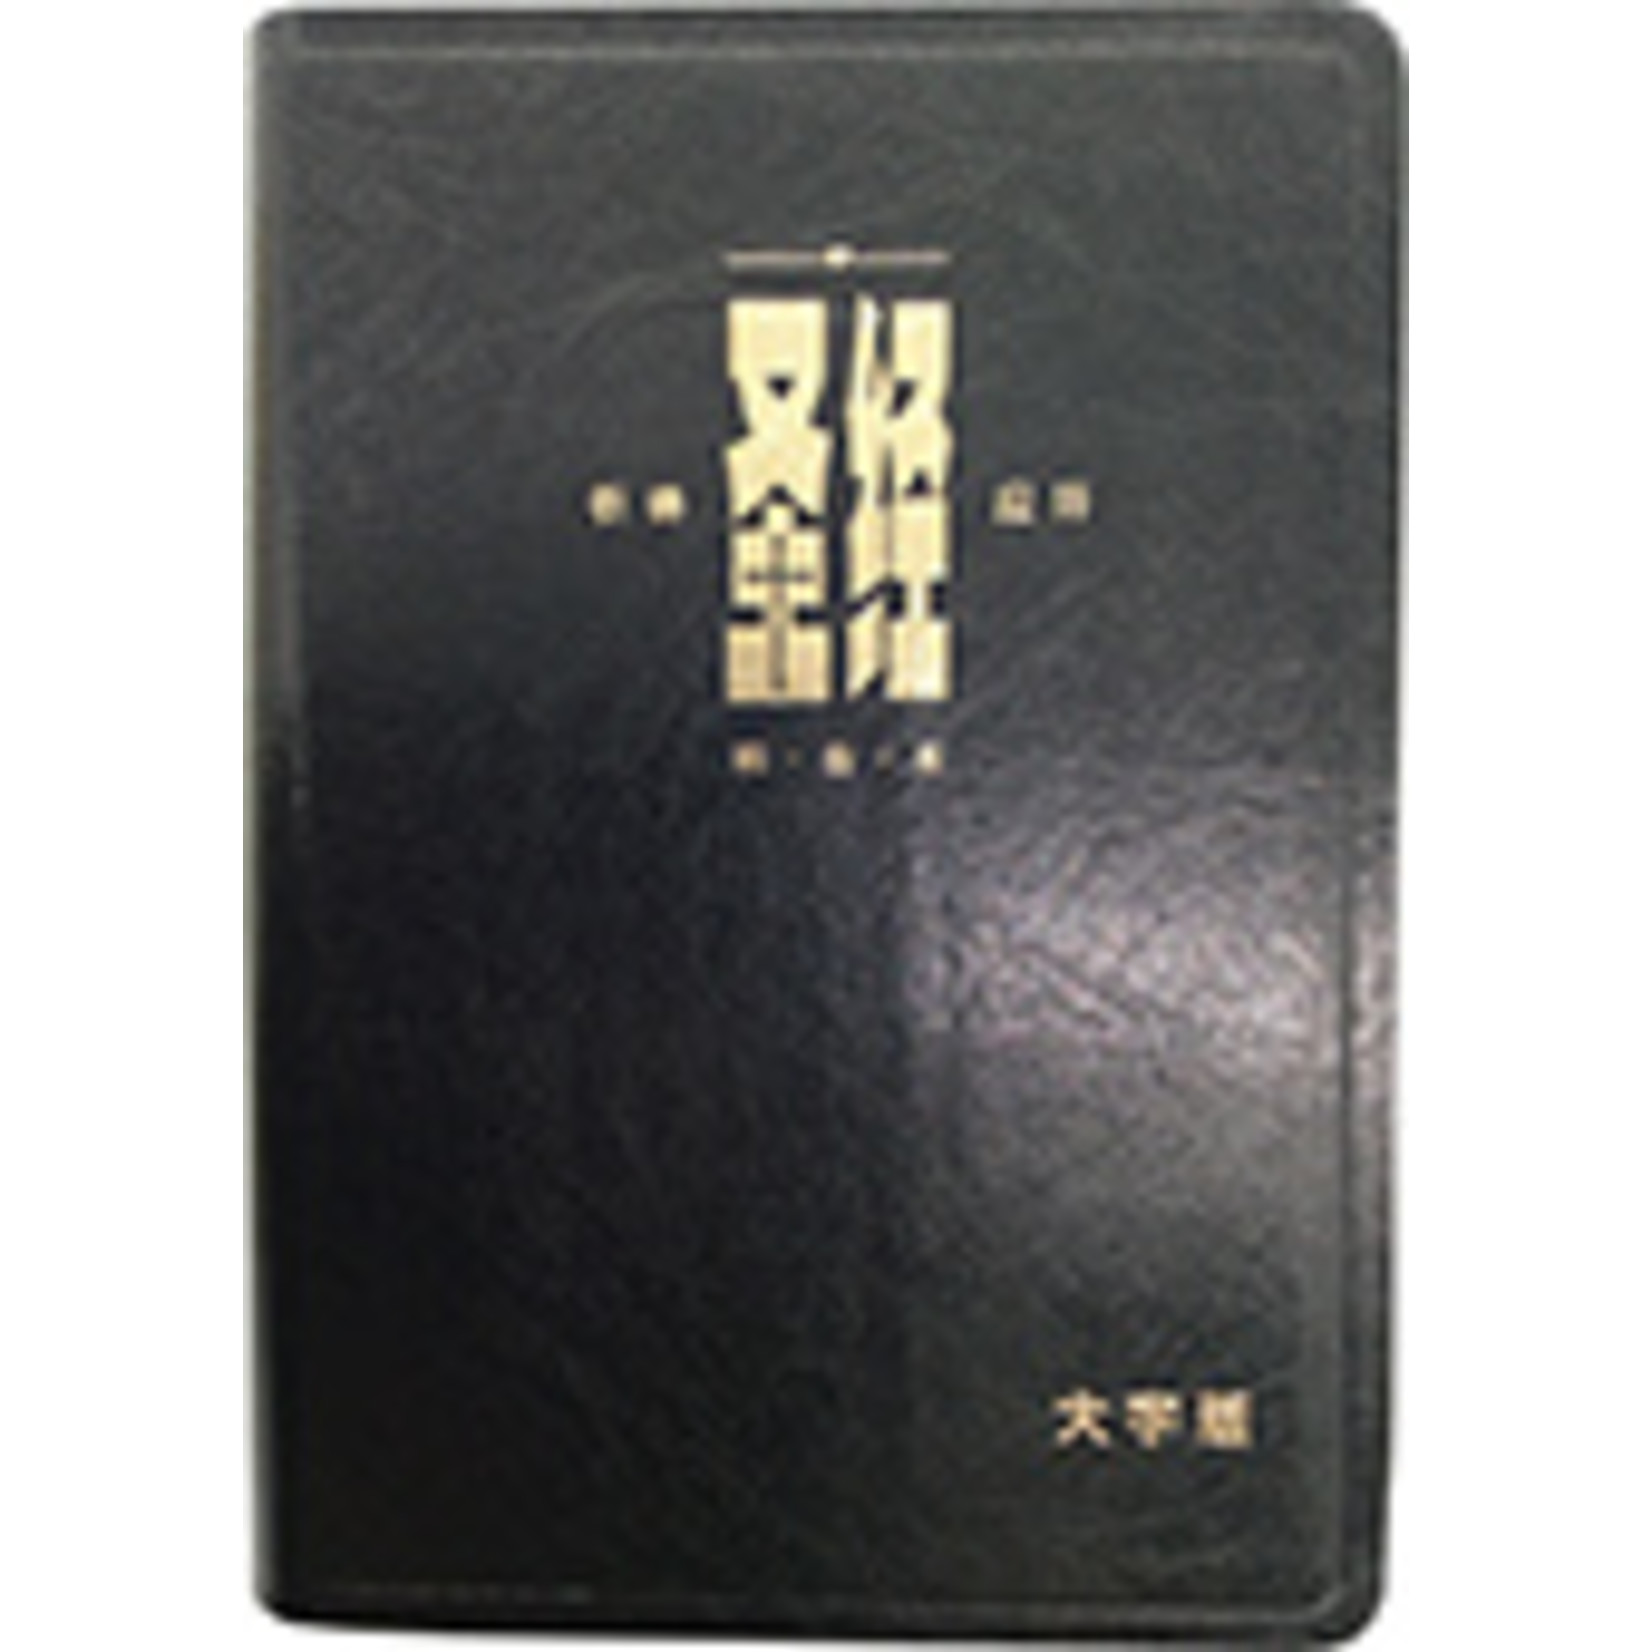 漢語聖經協會 Chinese Bible International 和合本．祈祷应许版大字版．黑色仿皮面．金边 Union Version (Prayer & Promise Large Print Edition) (Black Leather Gold Edge)